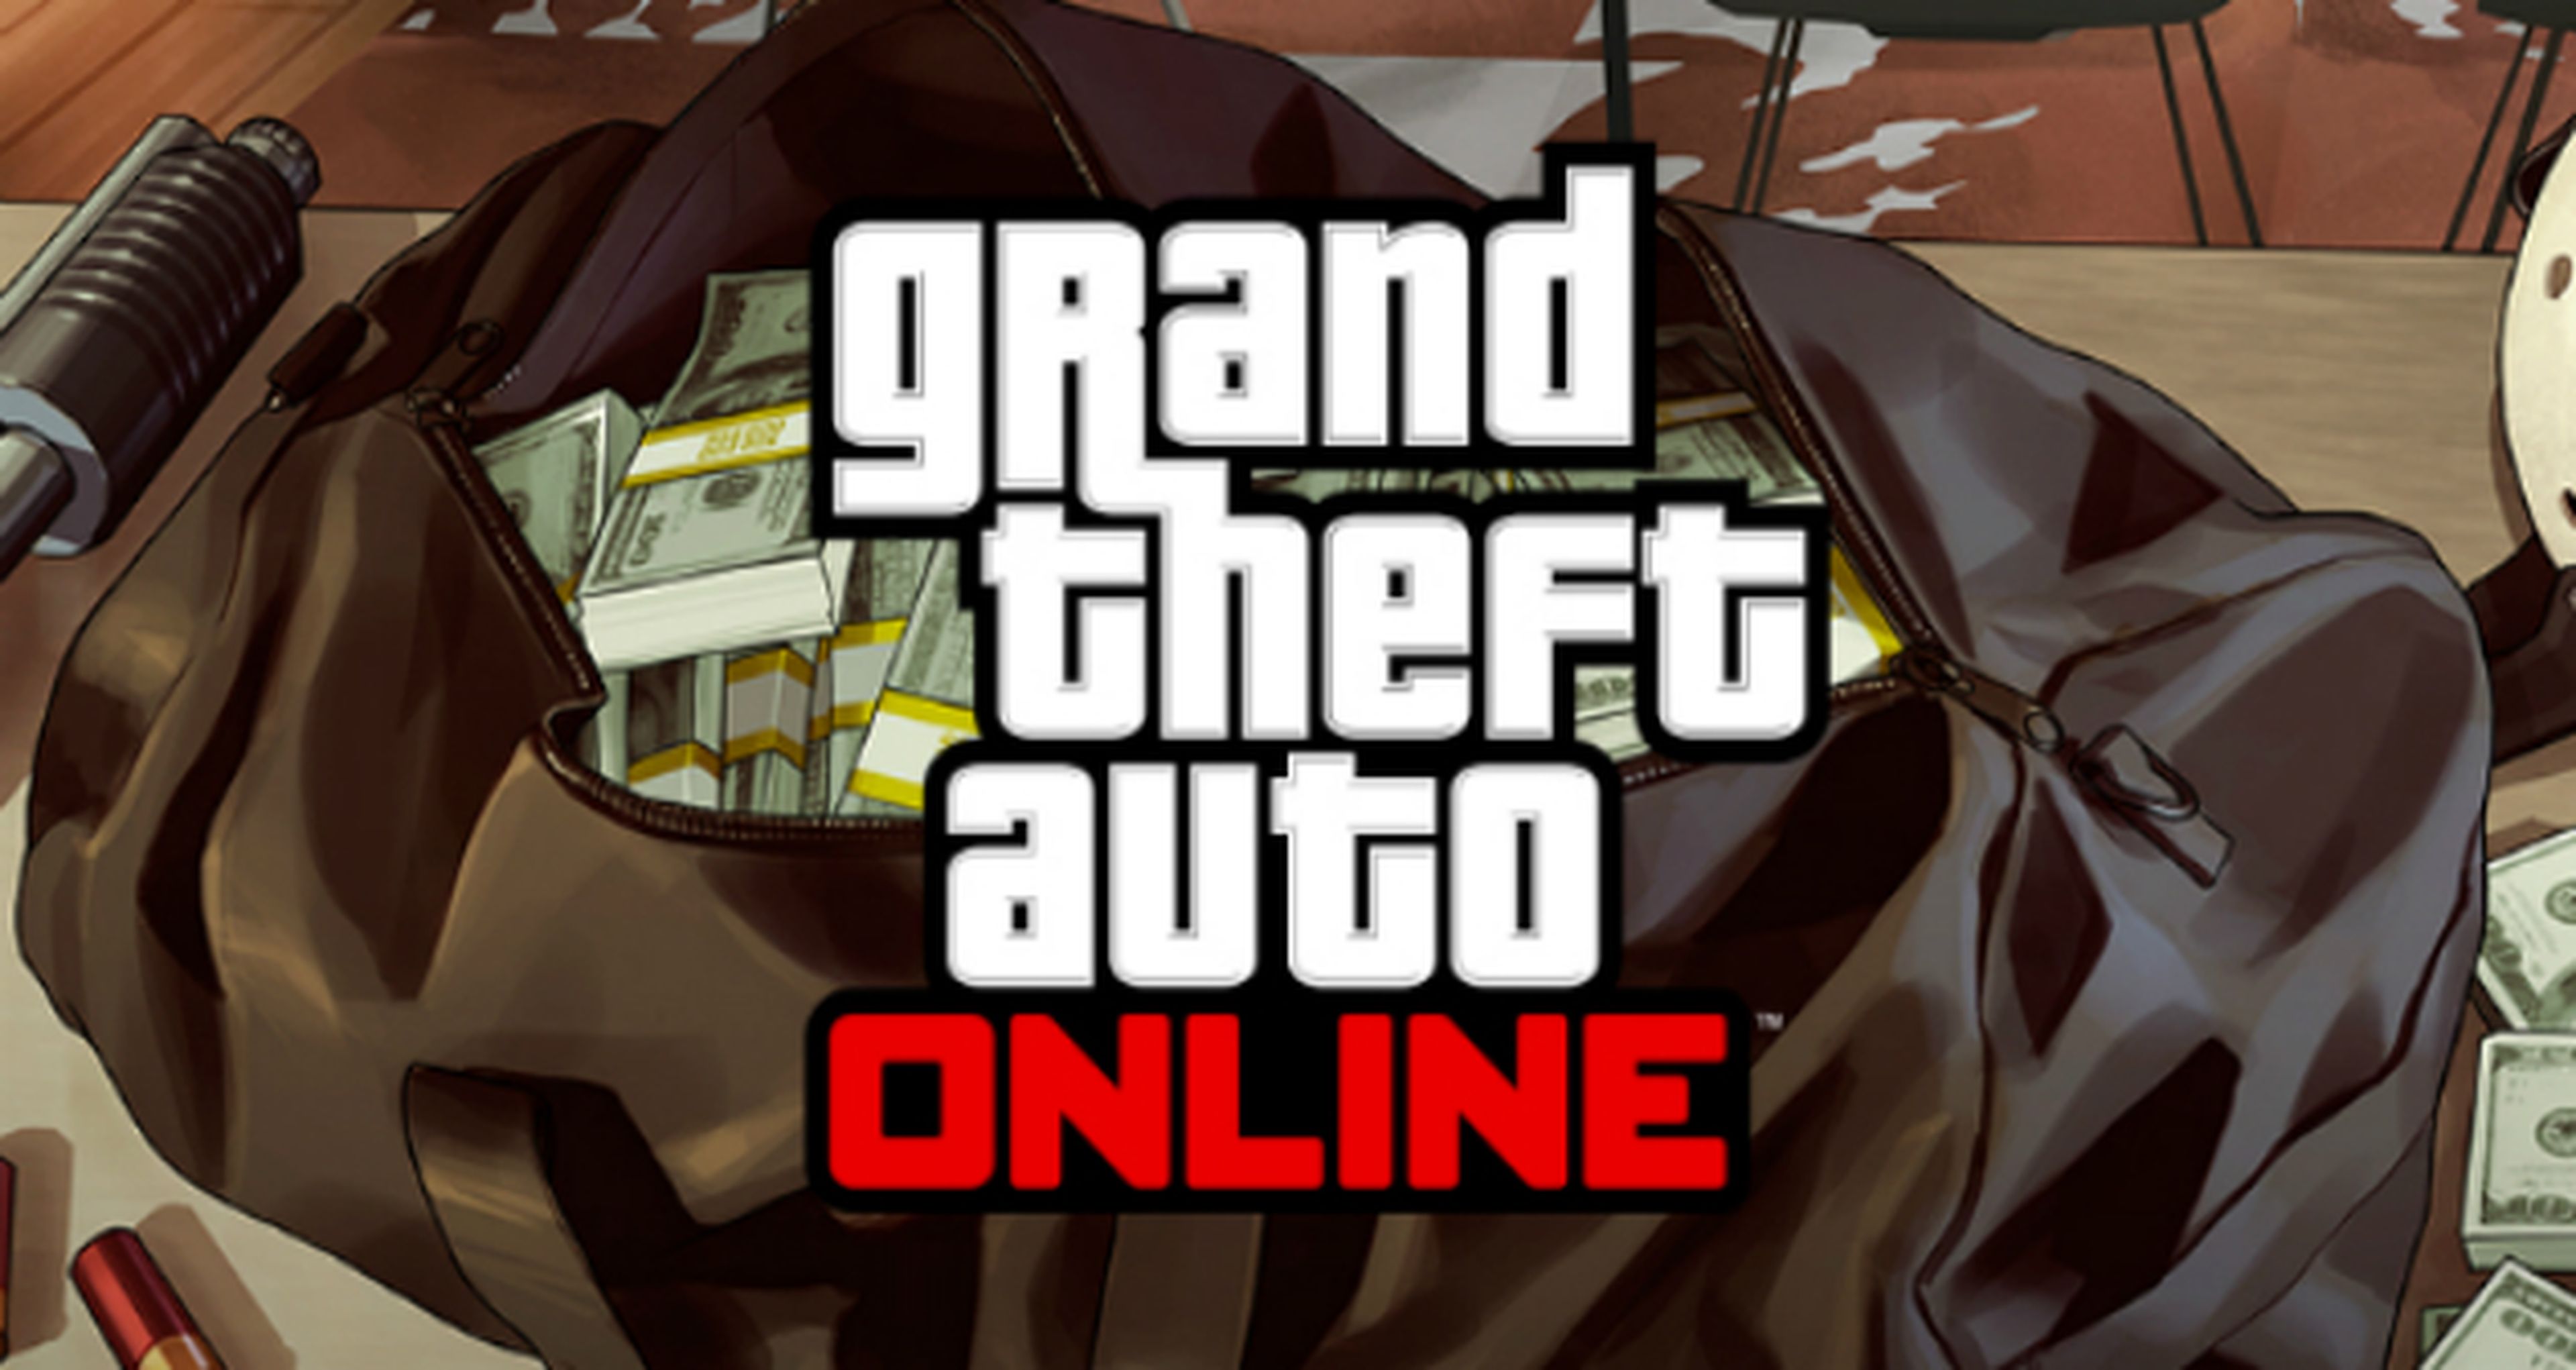 GTA Online - Nuevo evento con doble RP y GTA$